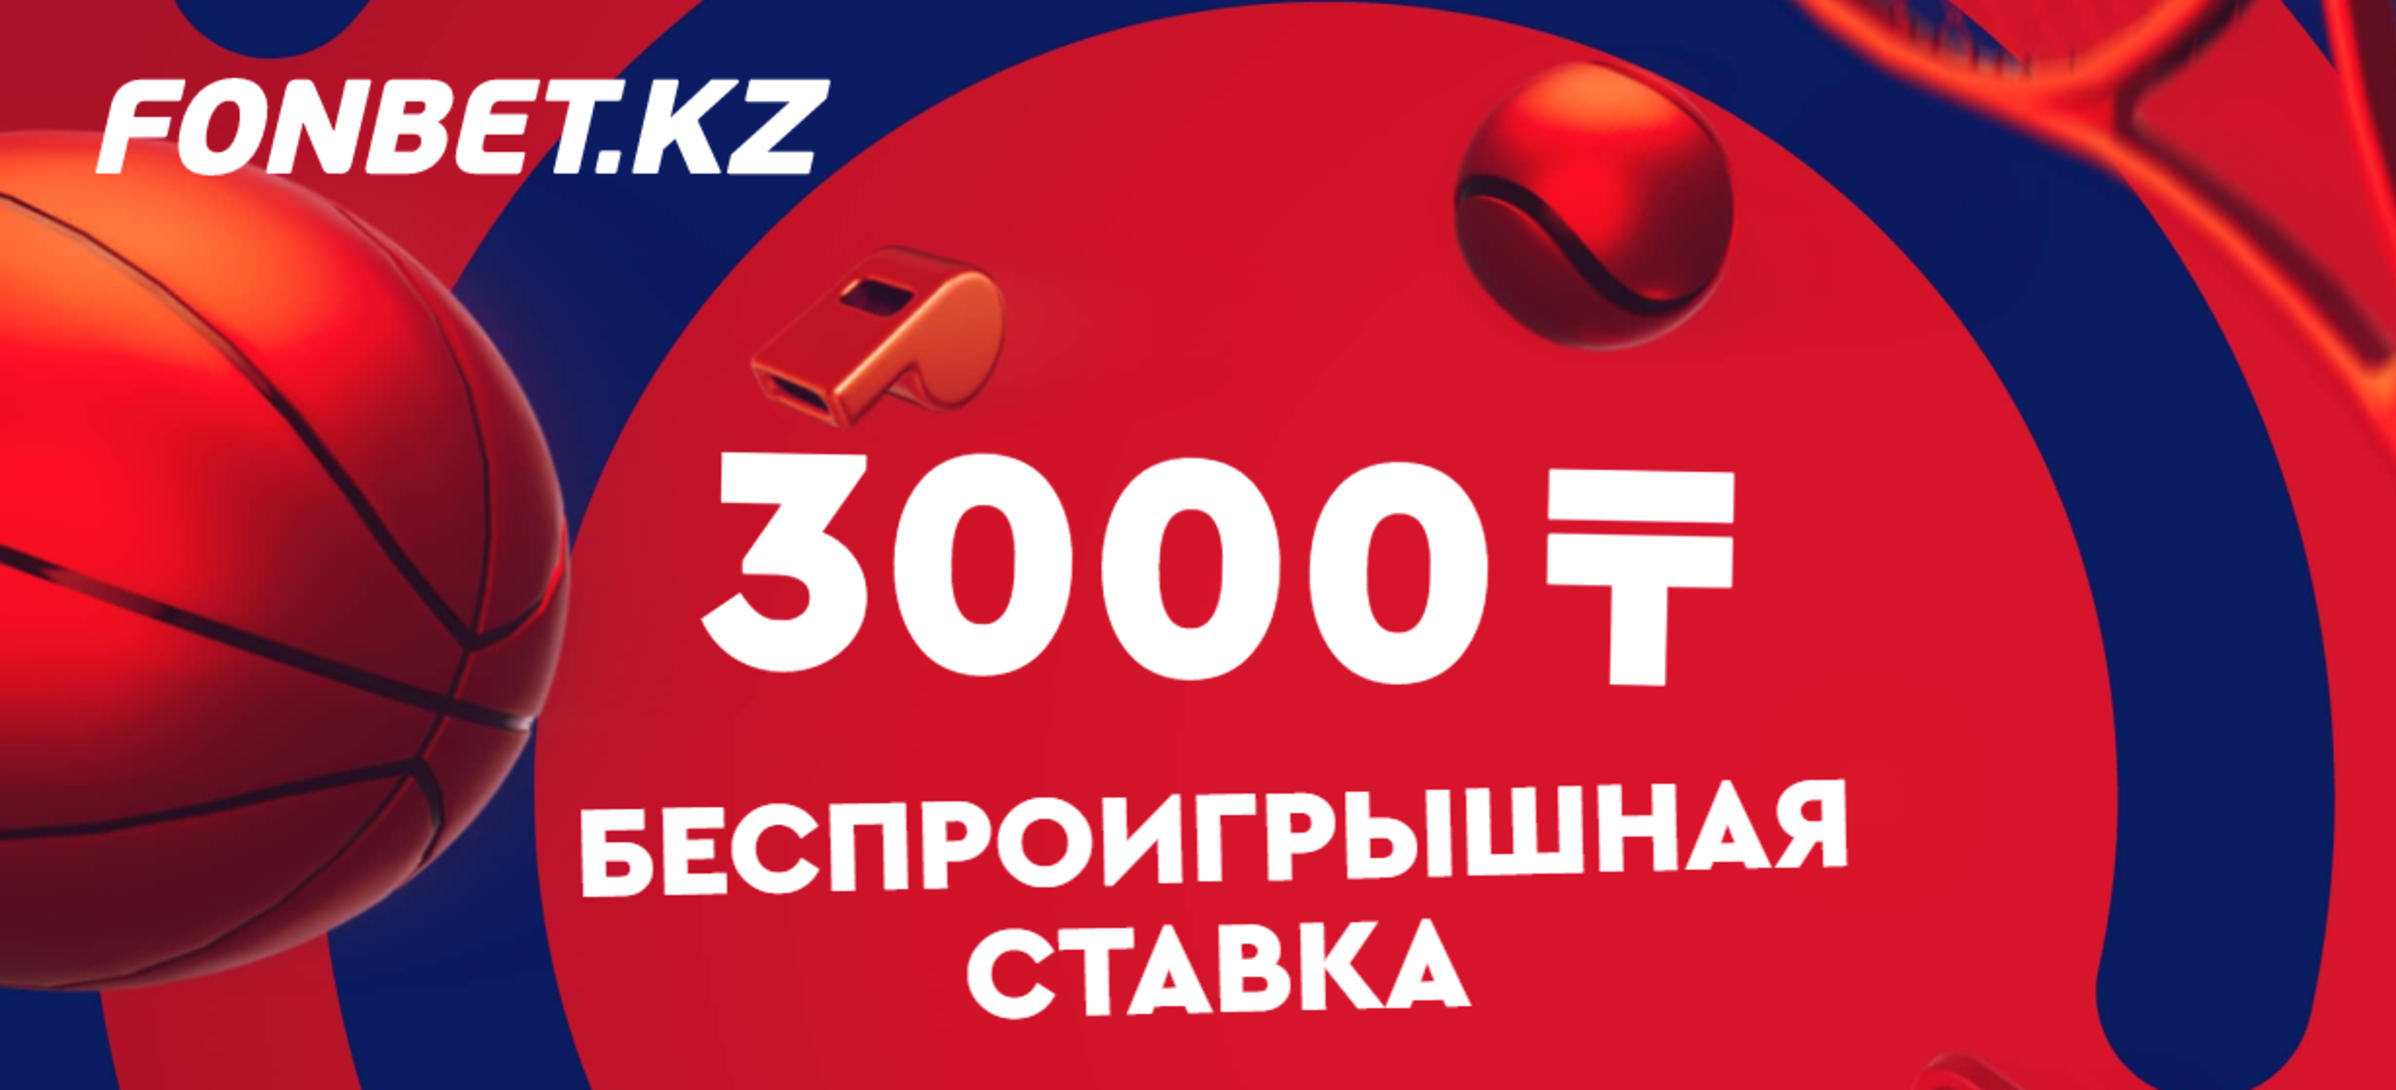 «Фонбет» в Казахстане застрахует вашу первую ставку на 3000 тенге